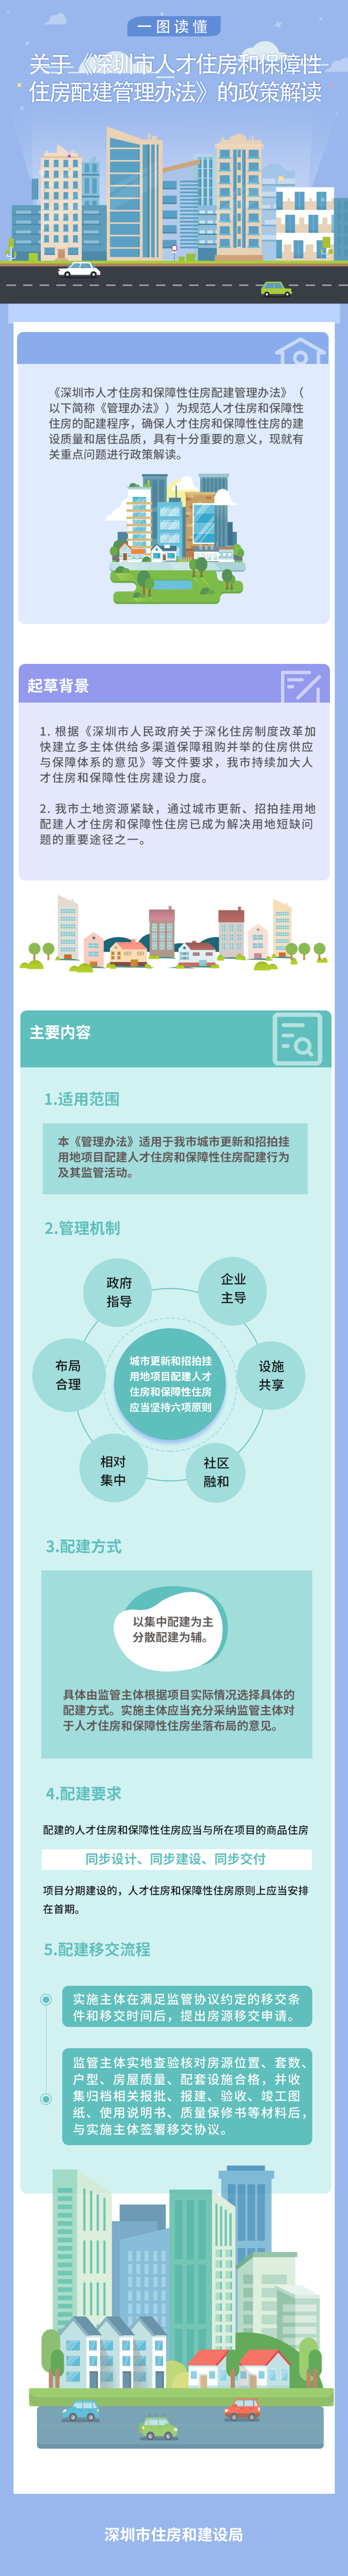 《深圳市人才住房和保障性住房配建管理办法》政策解读.jpg